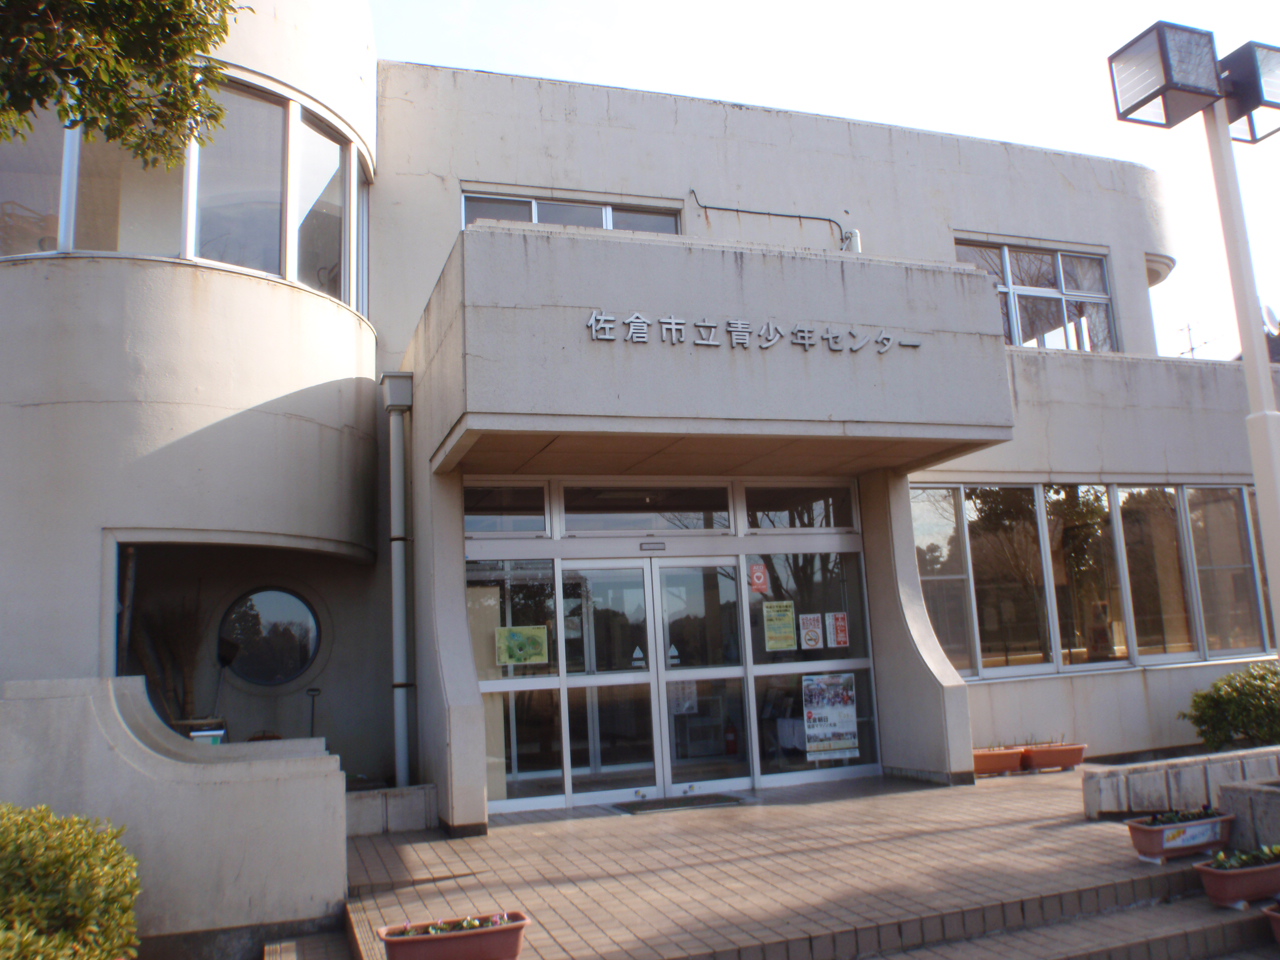 入口上部の壁に「佐倉市立青少年センター」と書かれている青少年センターの外観写真